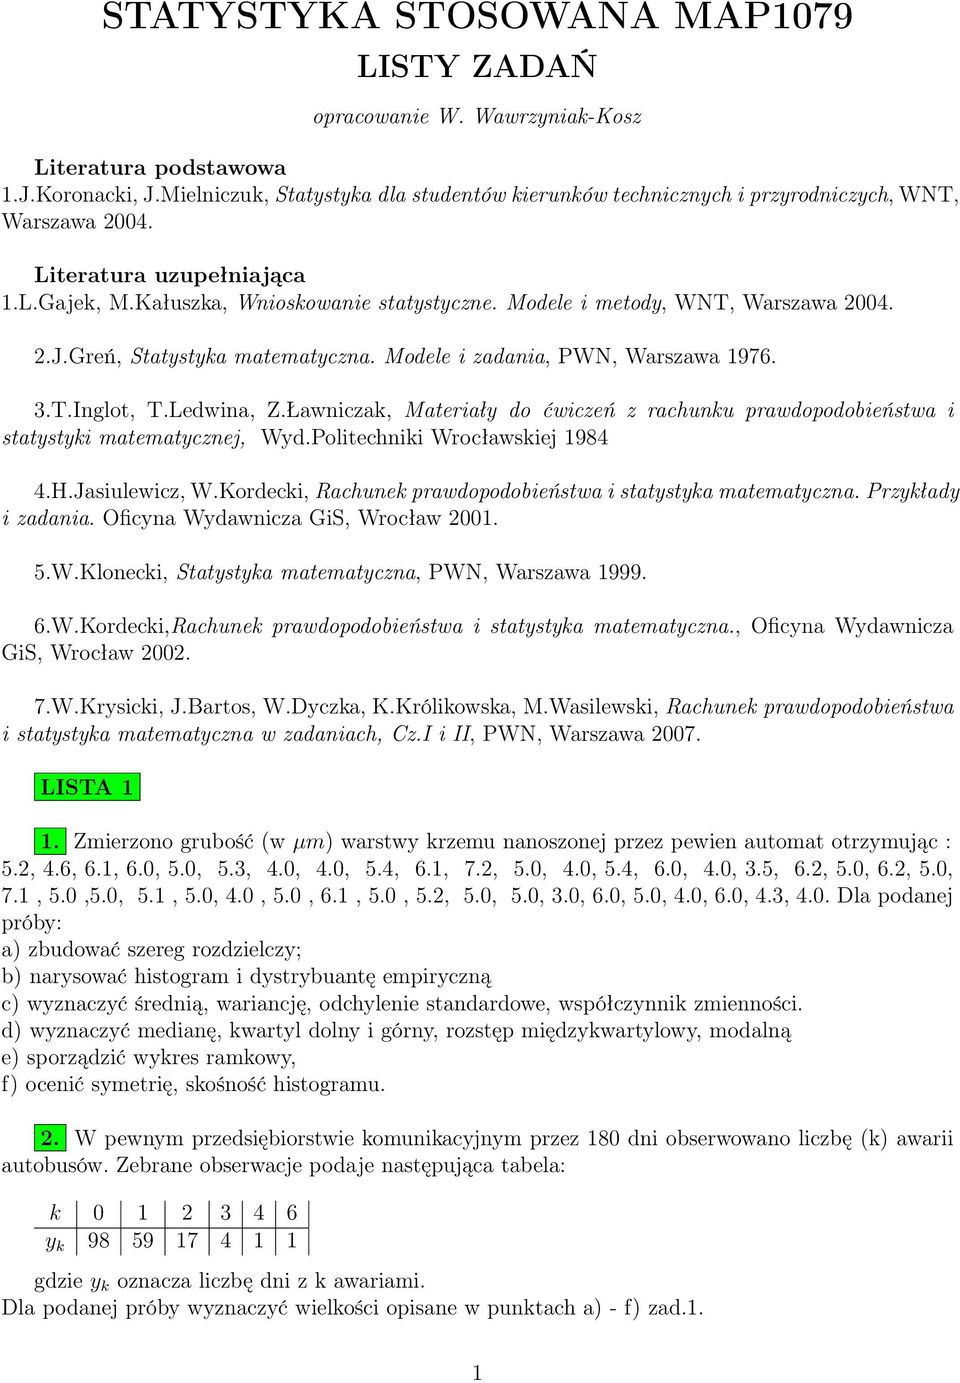 Modele i metody, WNT, Warszawa 2004. 2.J.Greń, Statystyka matematyczna. Modele i zadania, PWN, Warszawa 1976. 3.T.Inglot, T.Ledwina, Z.